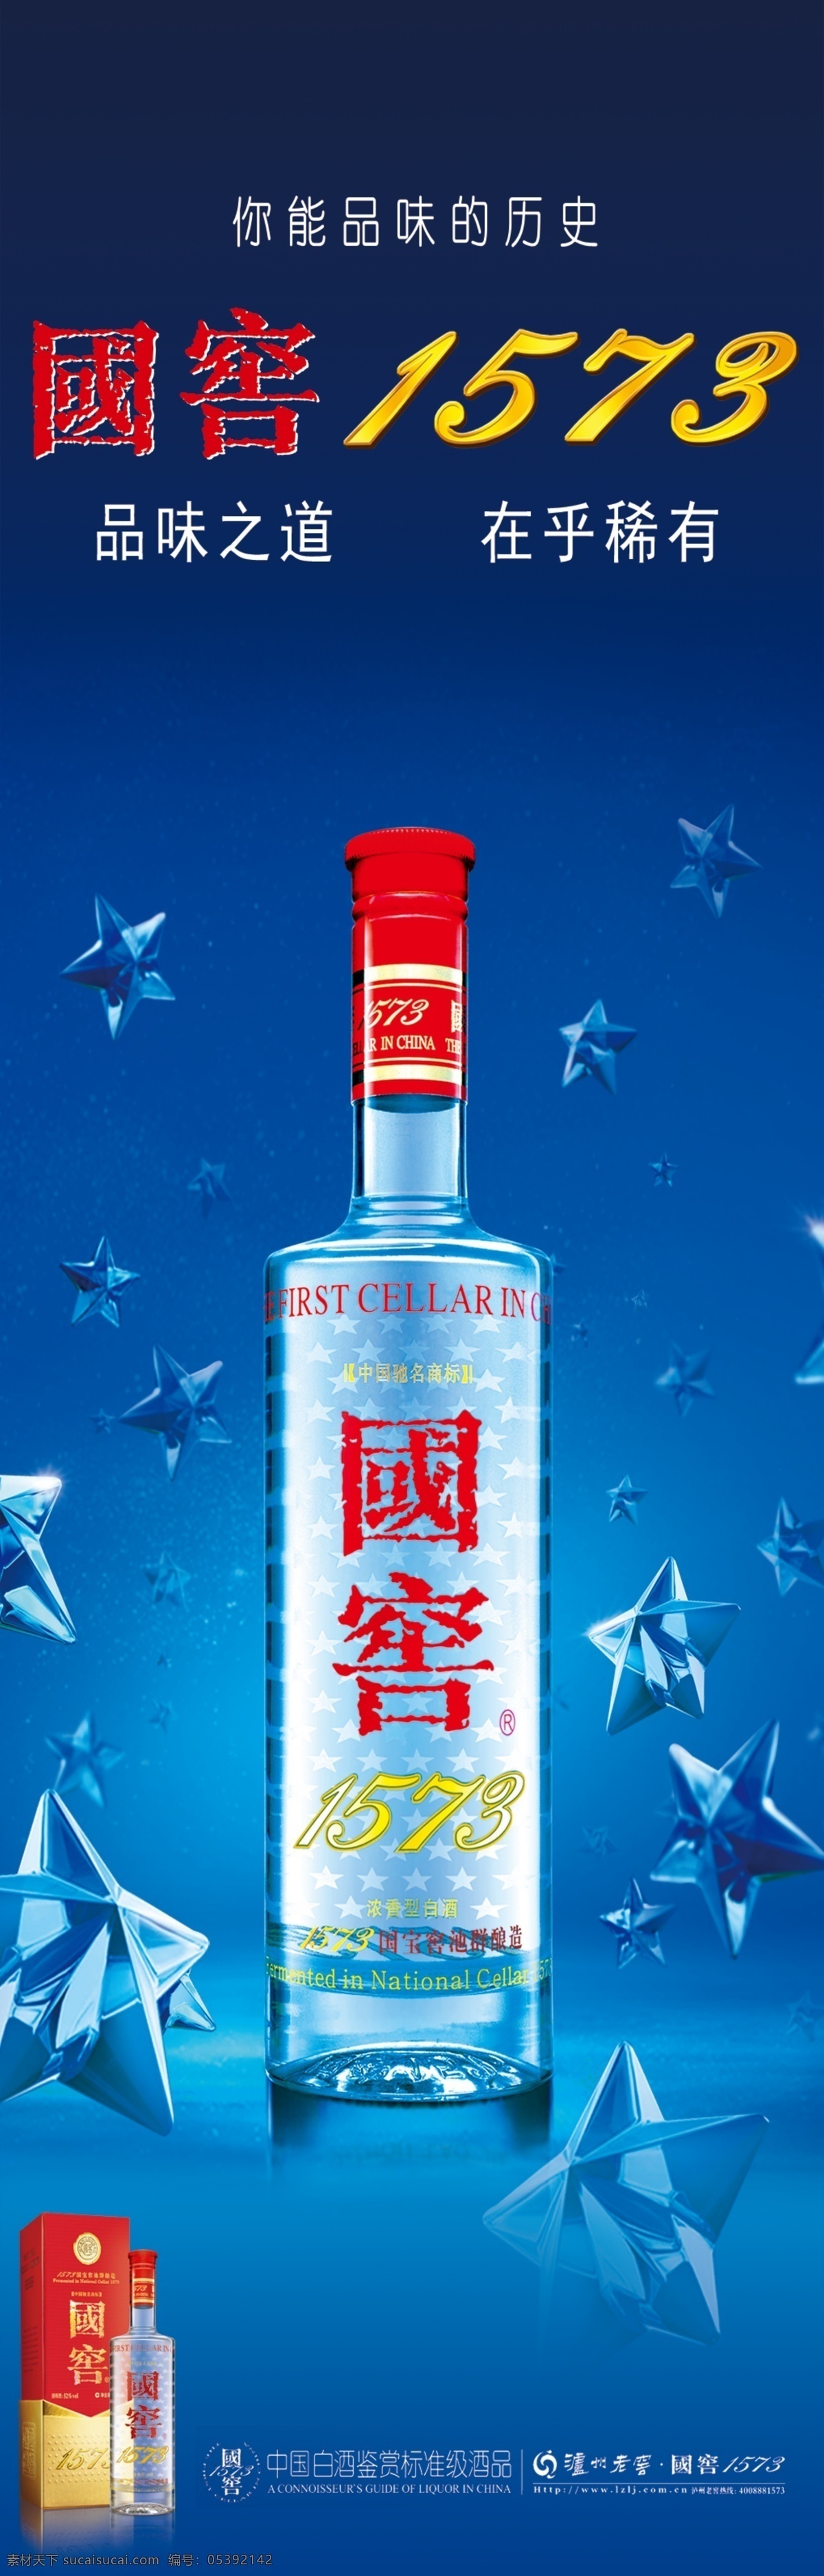 国窑1573 中国名酒 国窑 1573 星星 广告设计模板 源文件